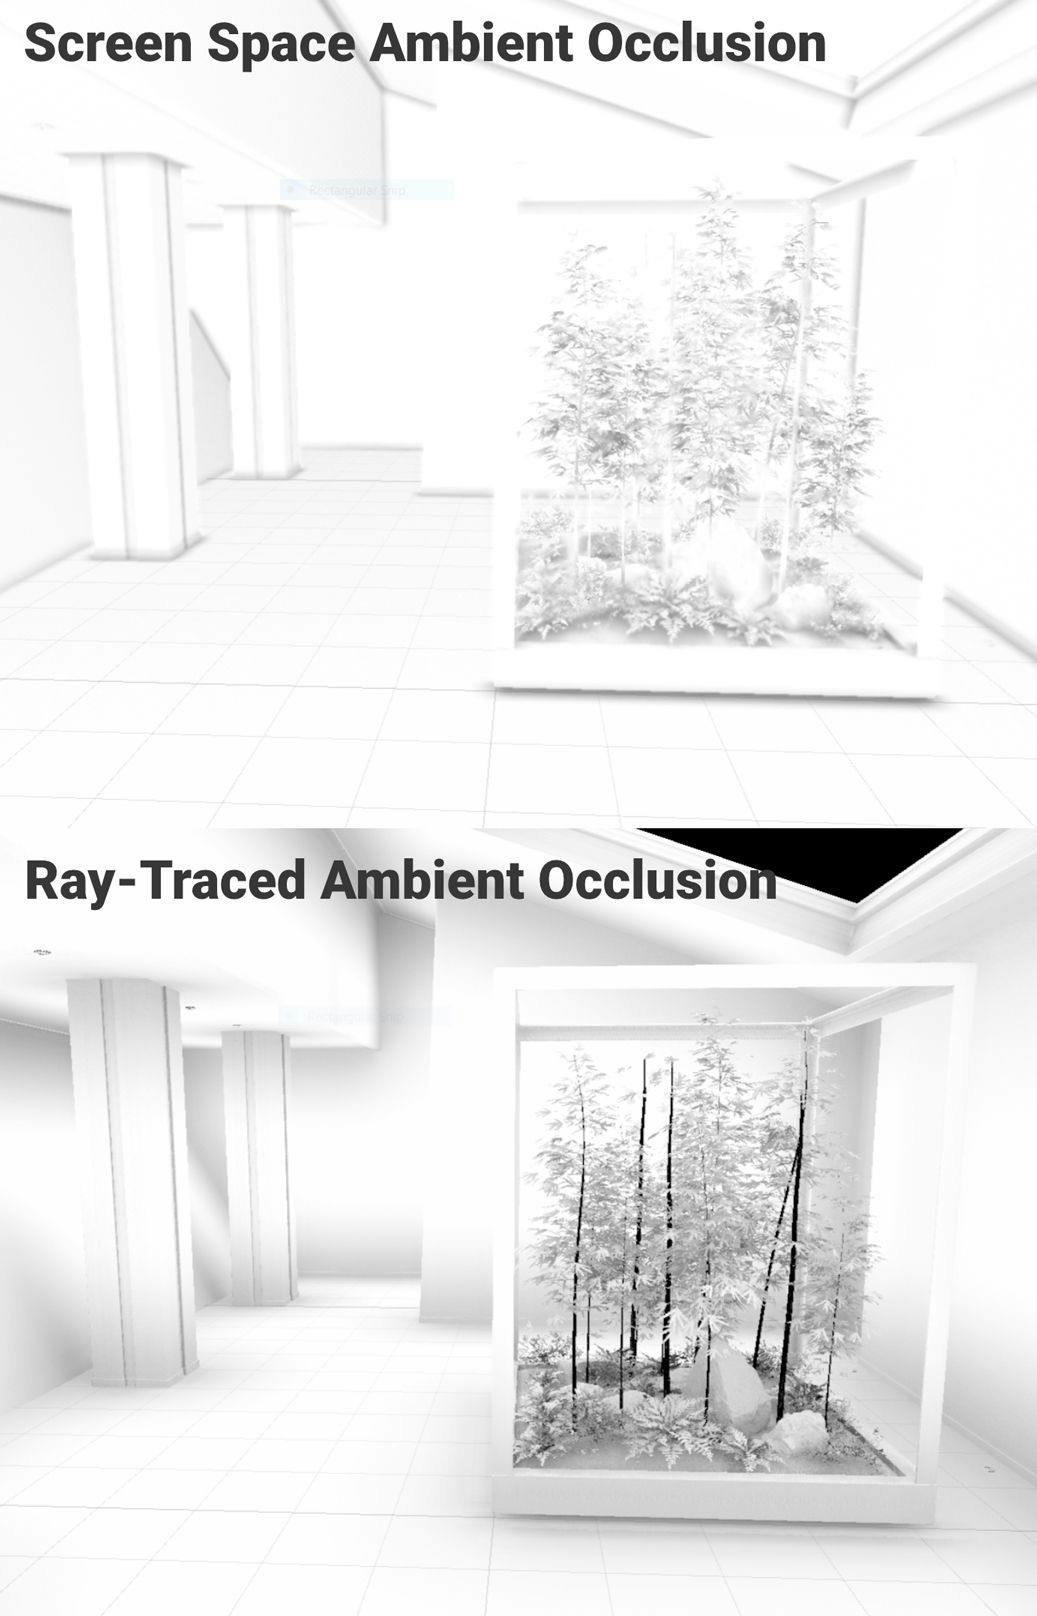 Oclusión ambiental del espacio de pantalla versus oclusión ambiental con trazado de rayos